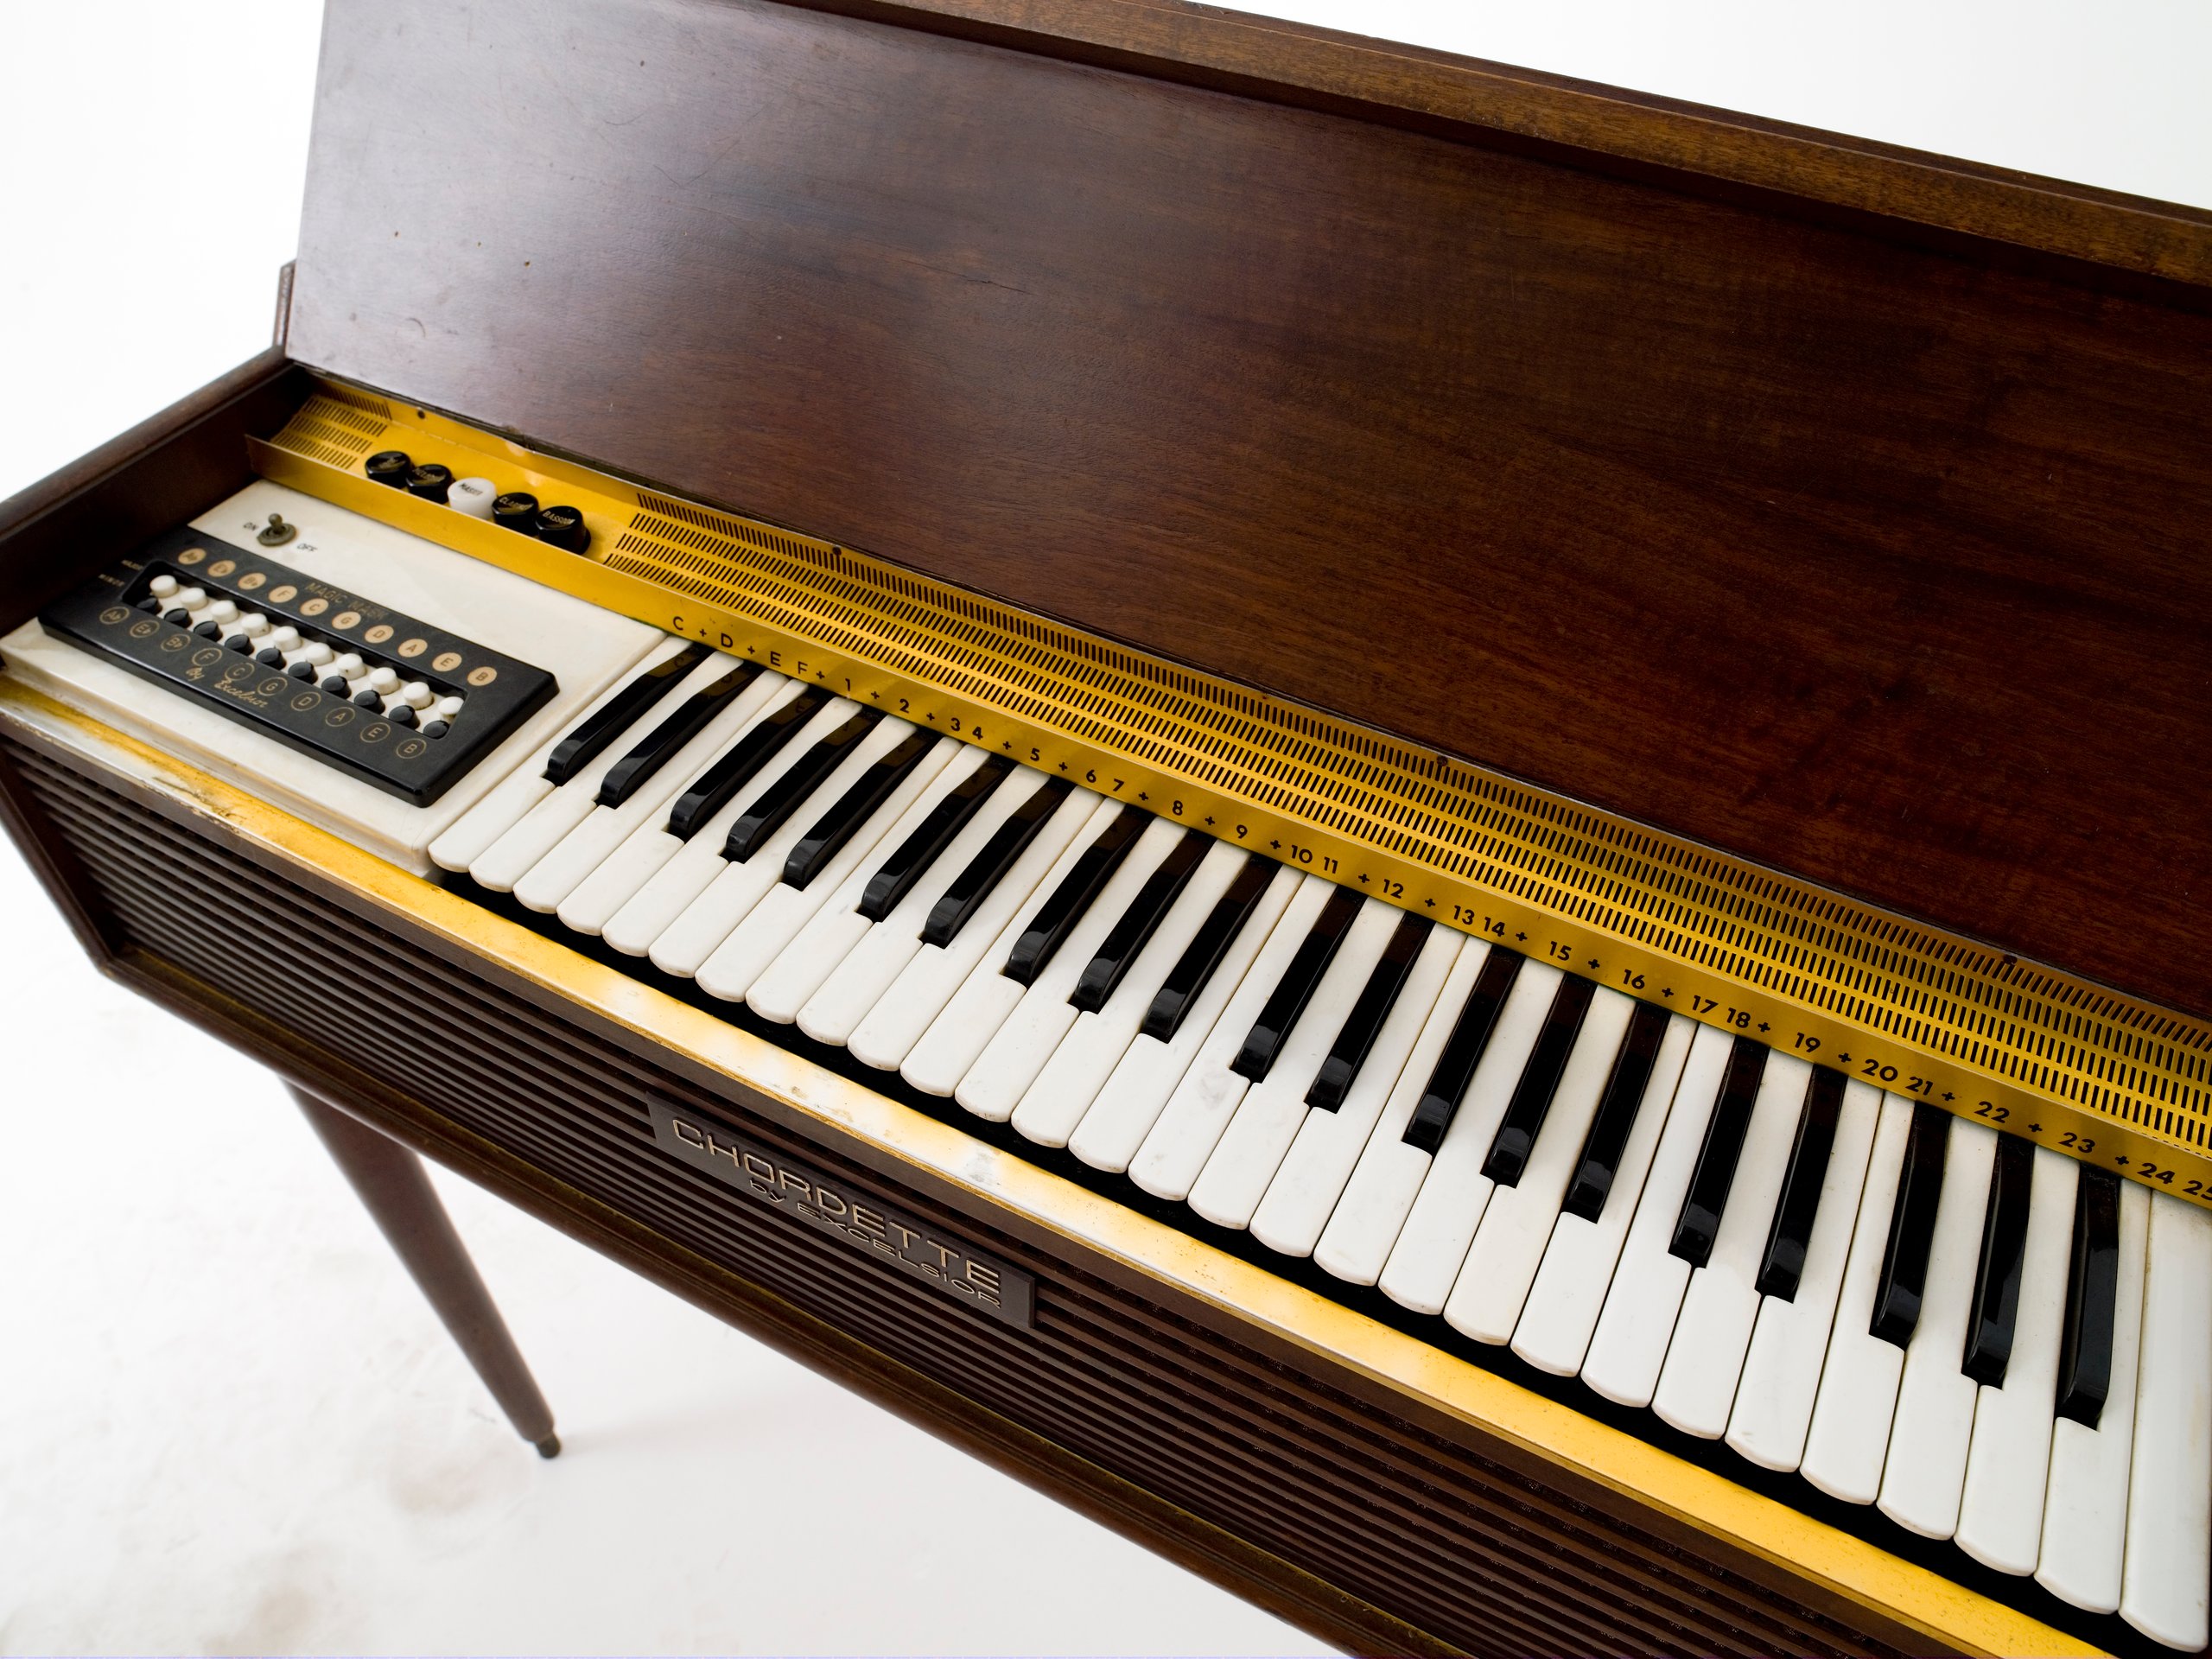 Chordette organ design by Excelsior